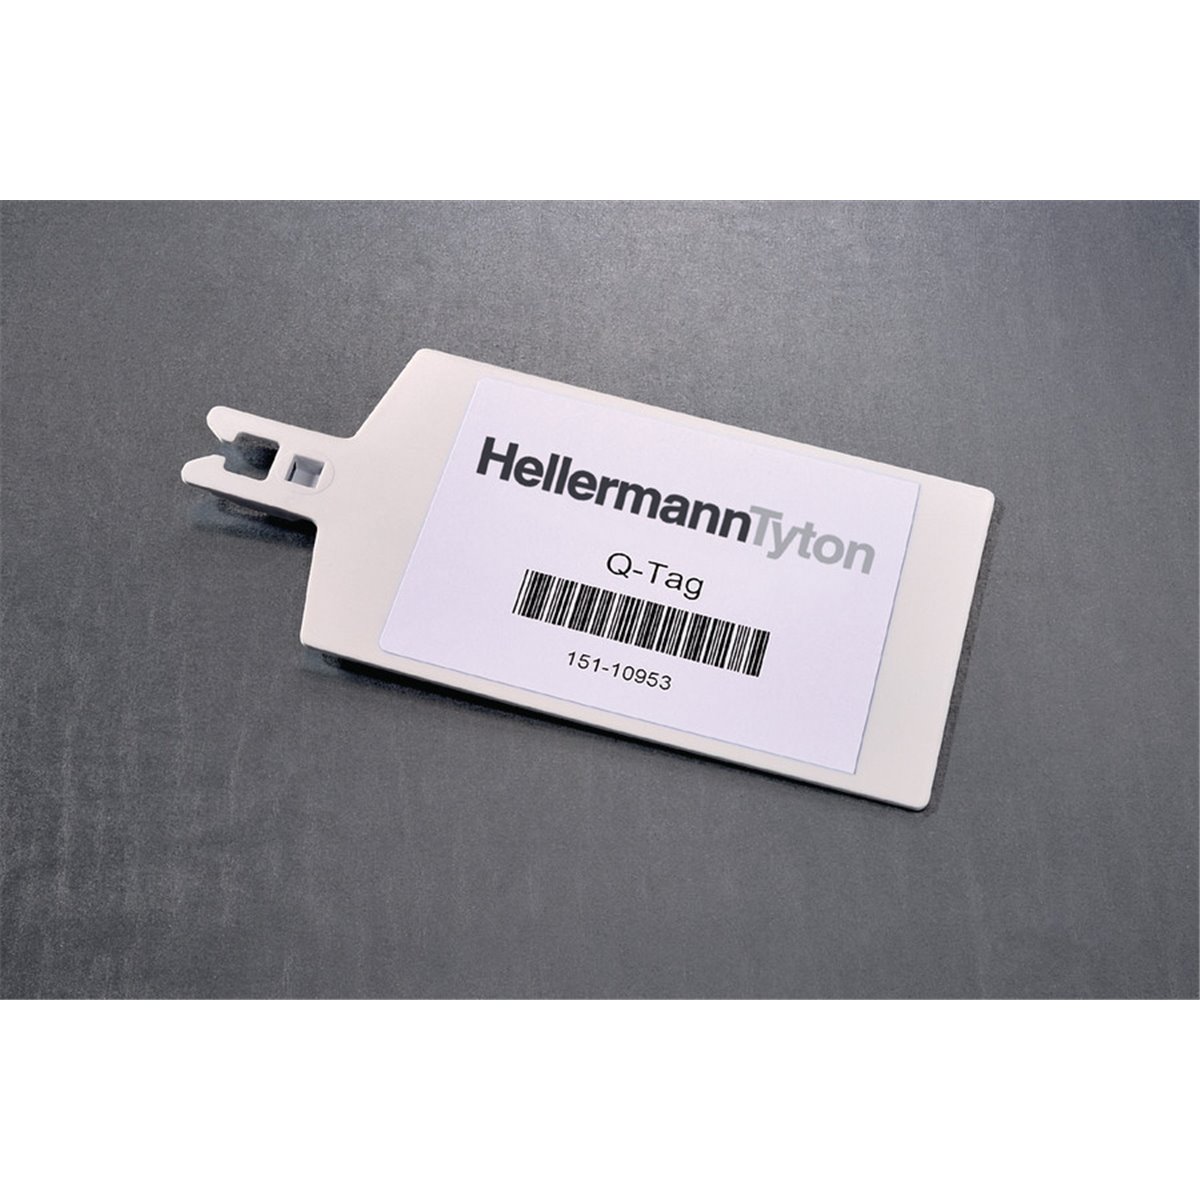 Identification plate 135x67mm, QT10065R-PA66-WH, polyamide 6.6, white, 25 pcs. HellermannTyton.